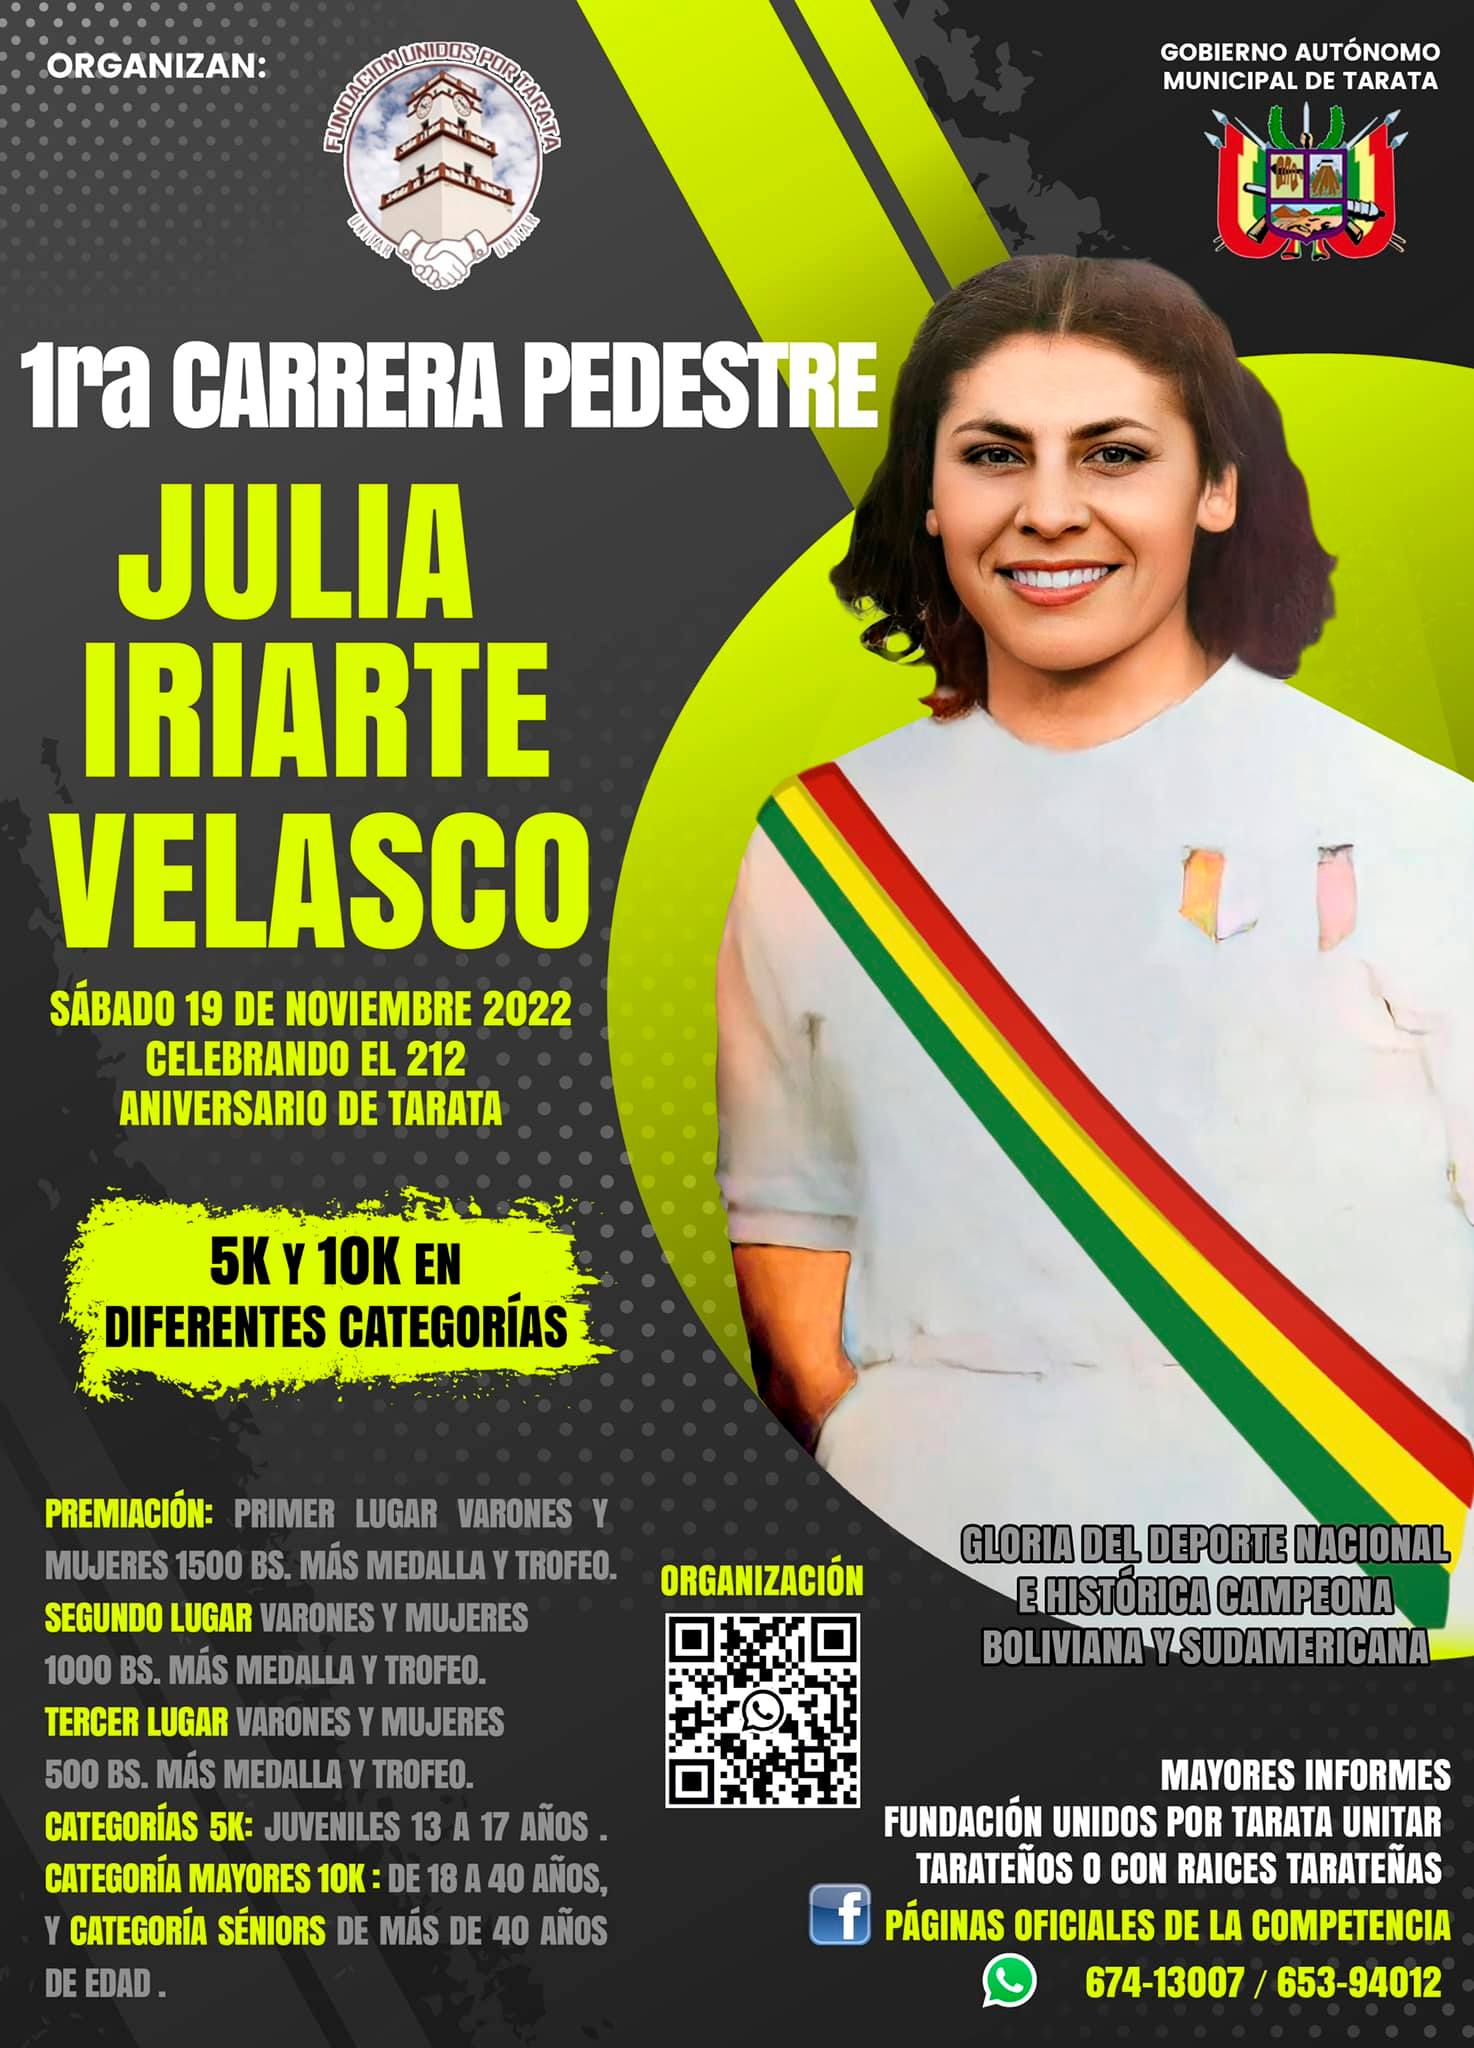 Carrera Pedestre Julia Iriarte